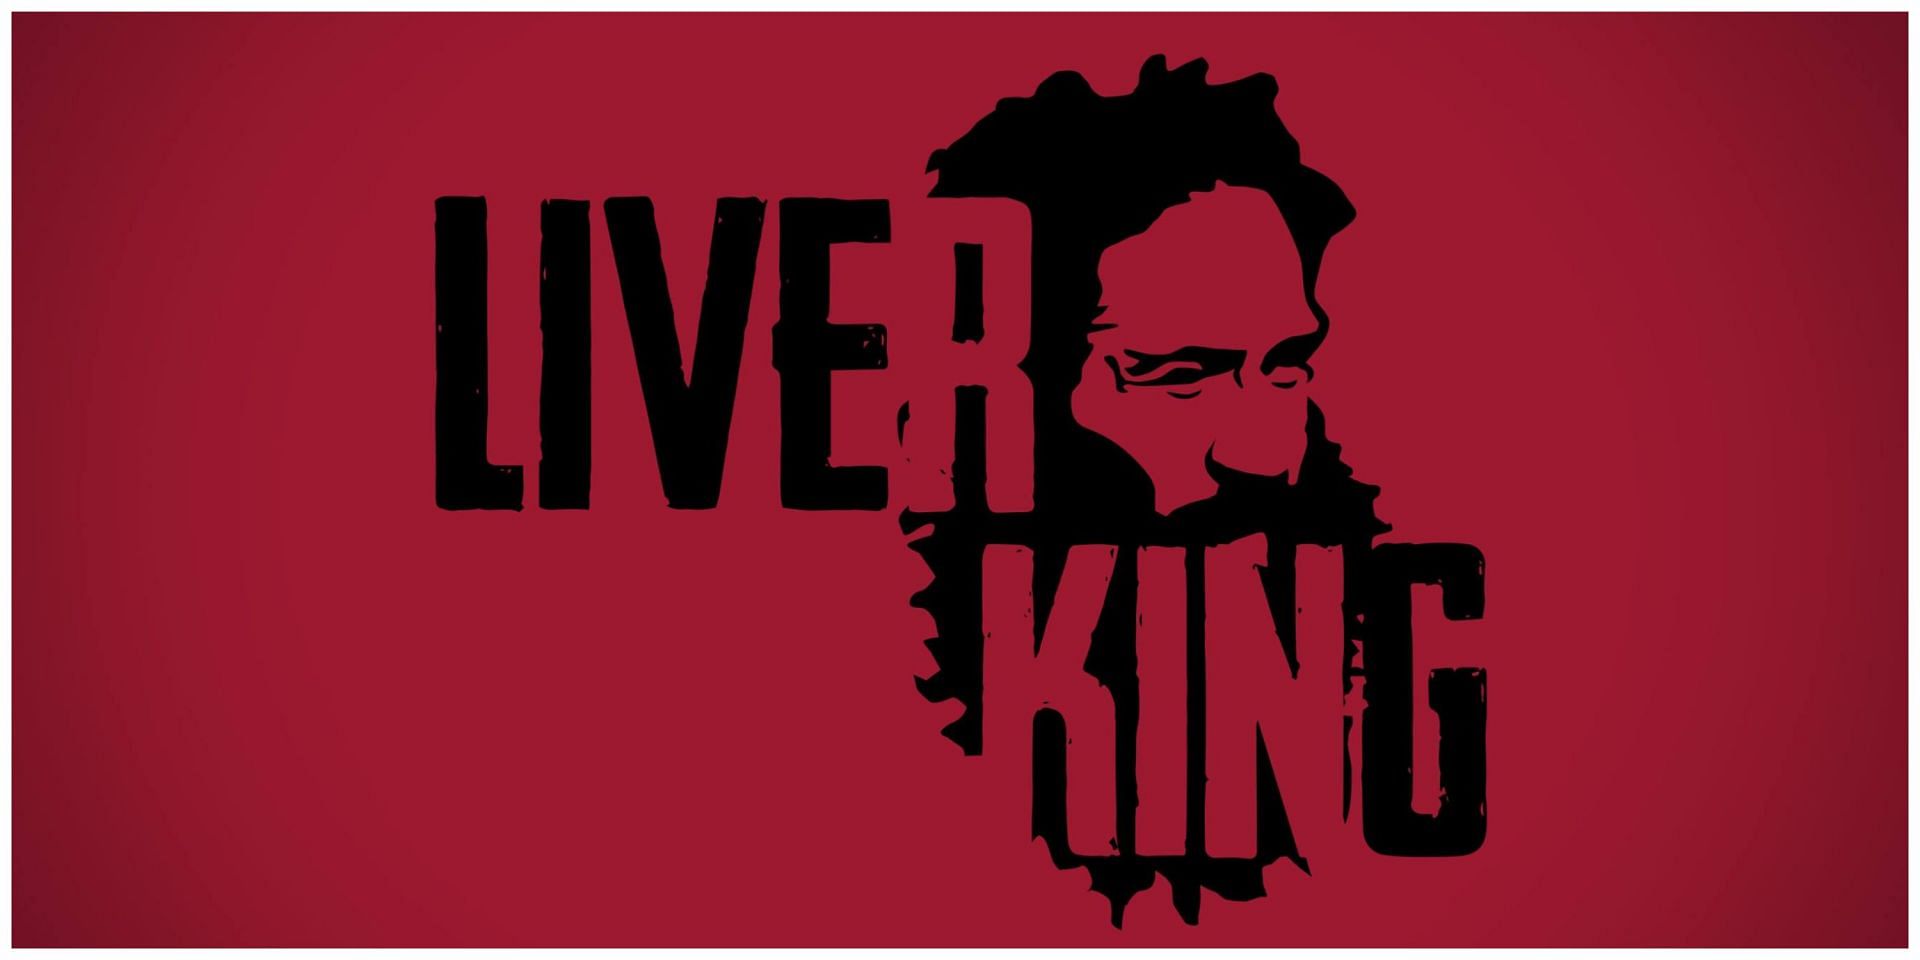 Liver King destined for 